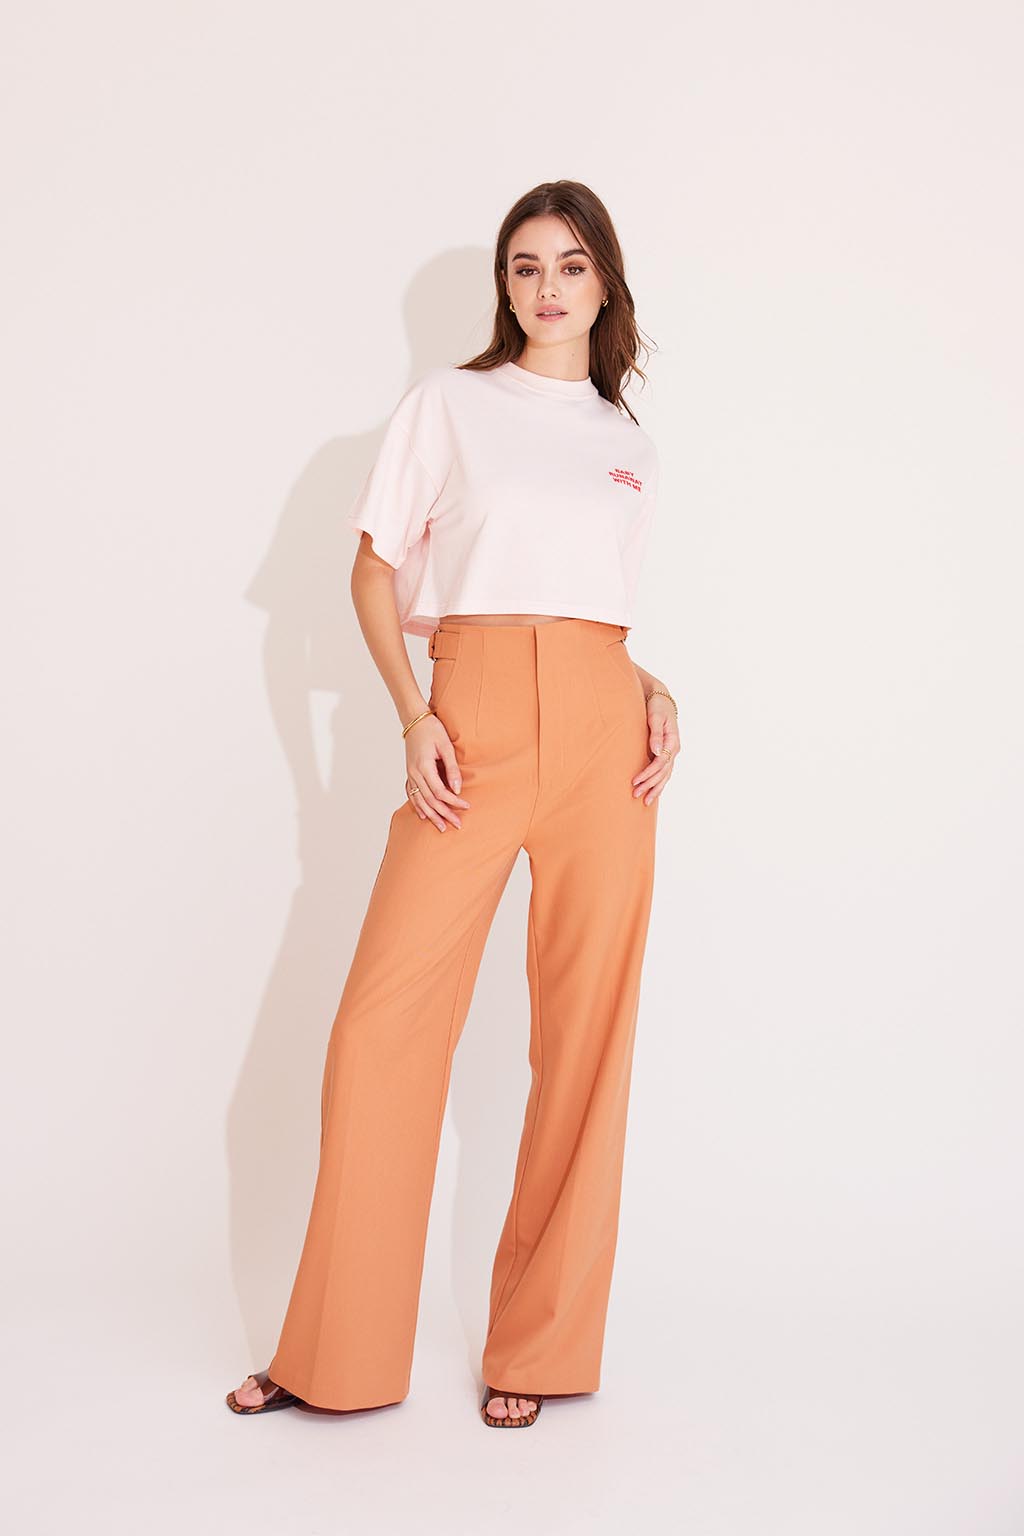 Waist Belted Color Pants Orange 7